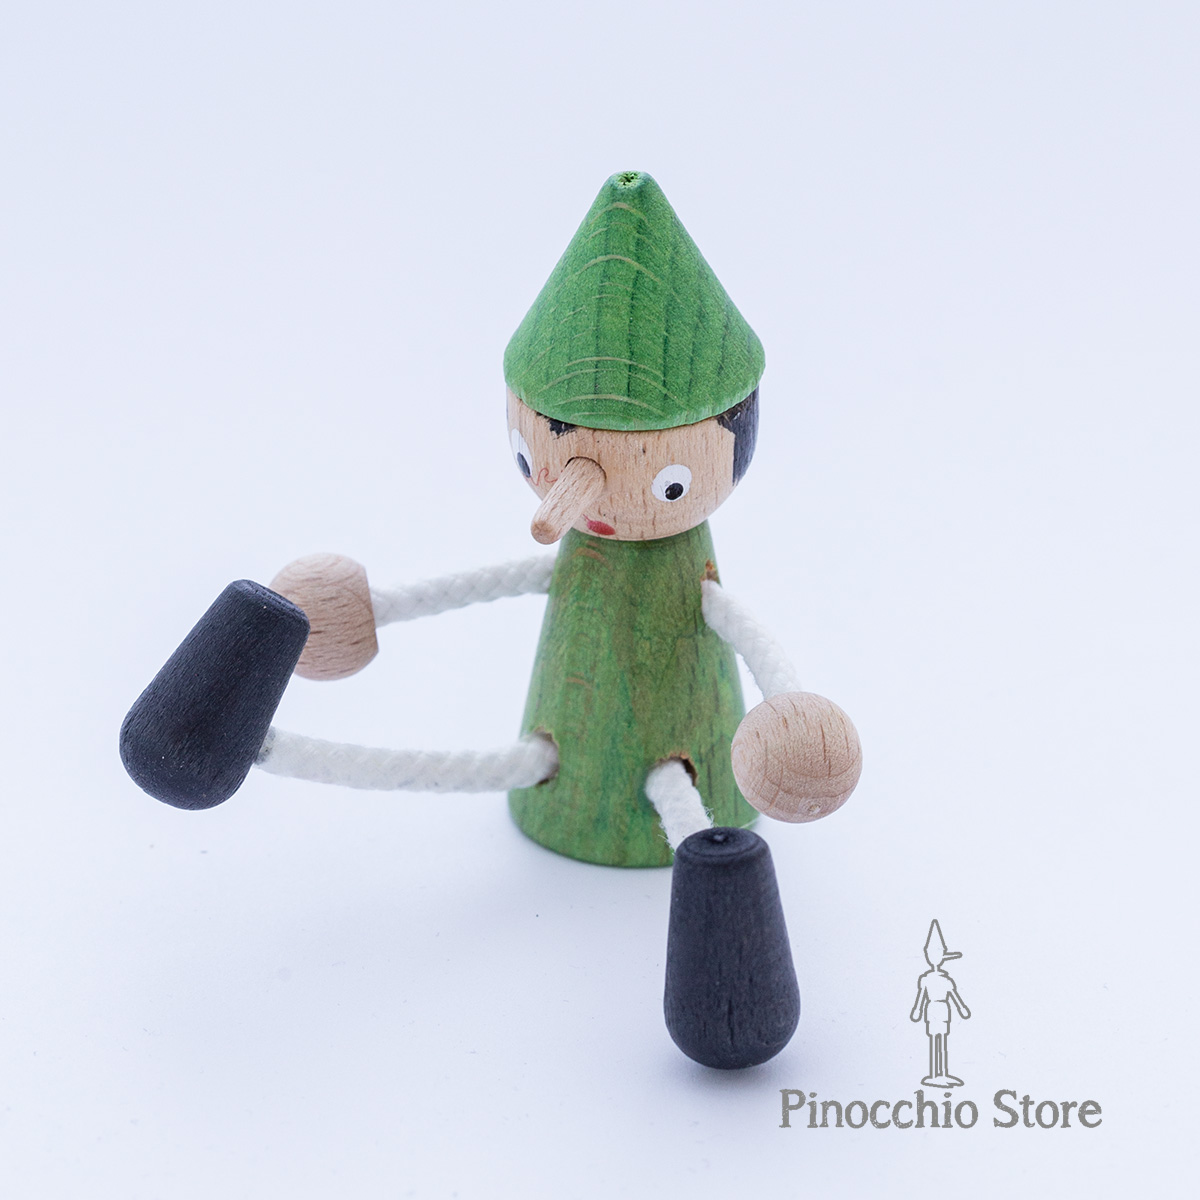 Calamite Piccole Pinocchio - Realizzate in legno naturale e